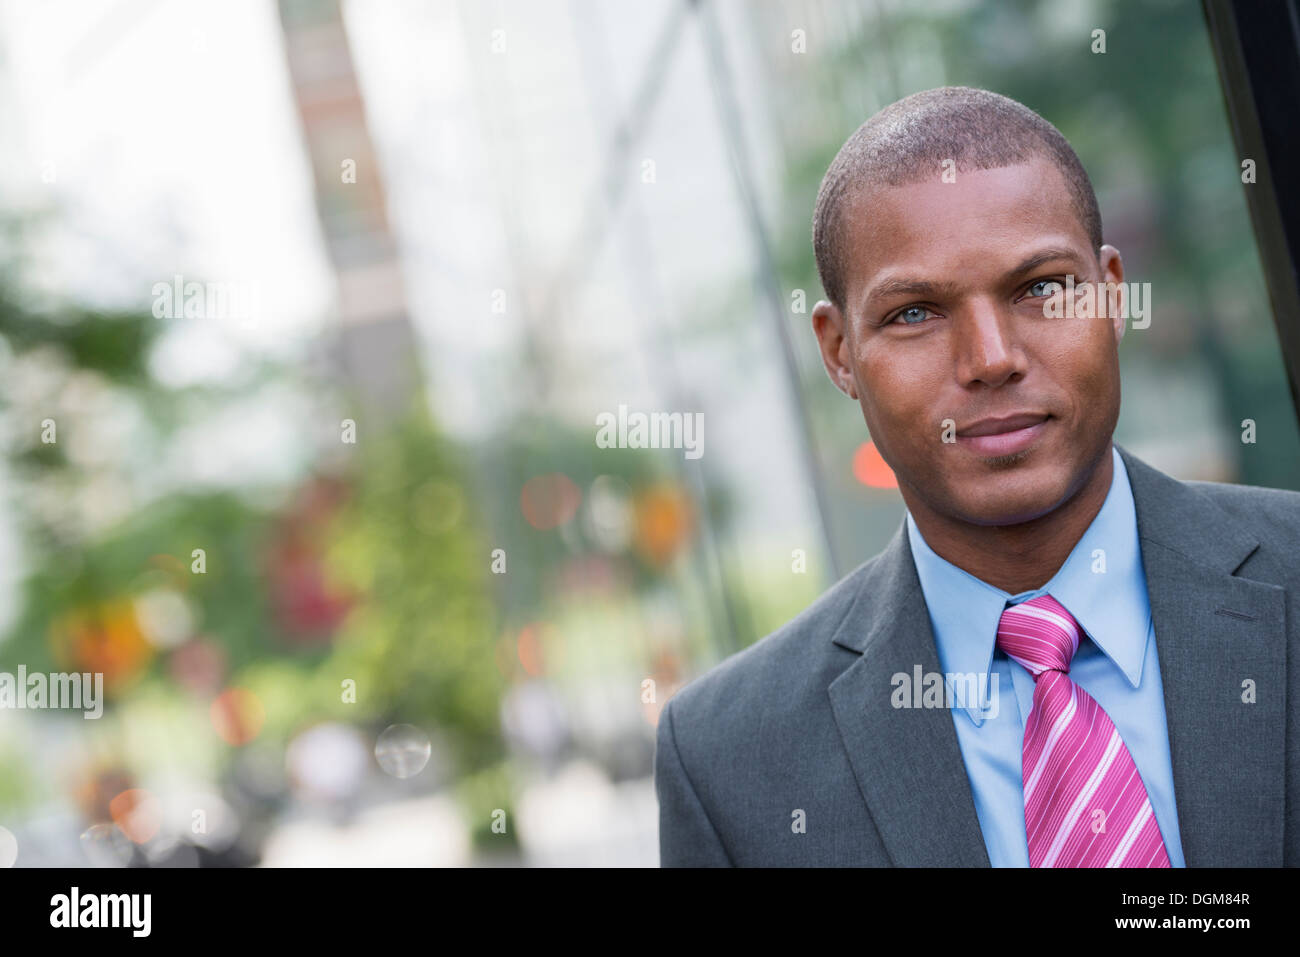 Ein junger Mann in einem Business-Anzug, ein hellblaues Hemd mit roter Krawatte. Auf einer Stadtstraße. Stockfoto